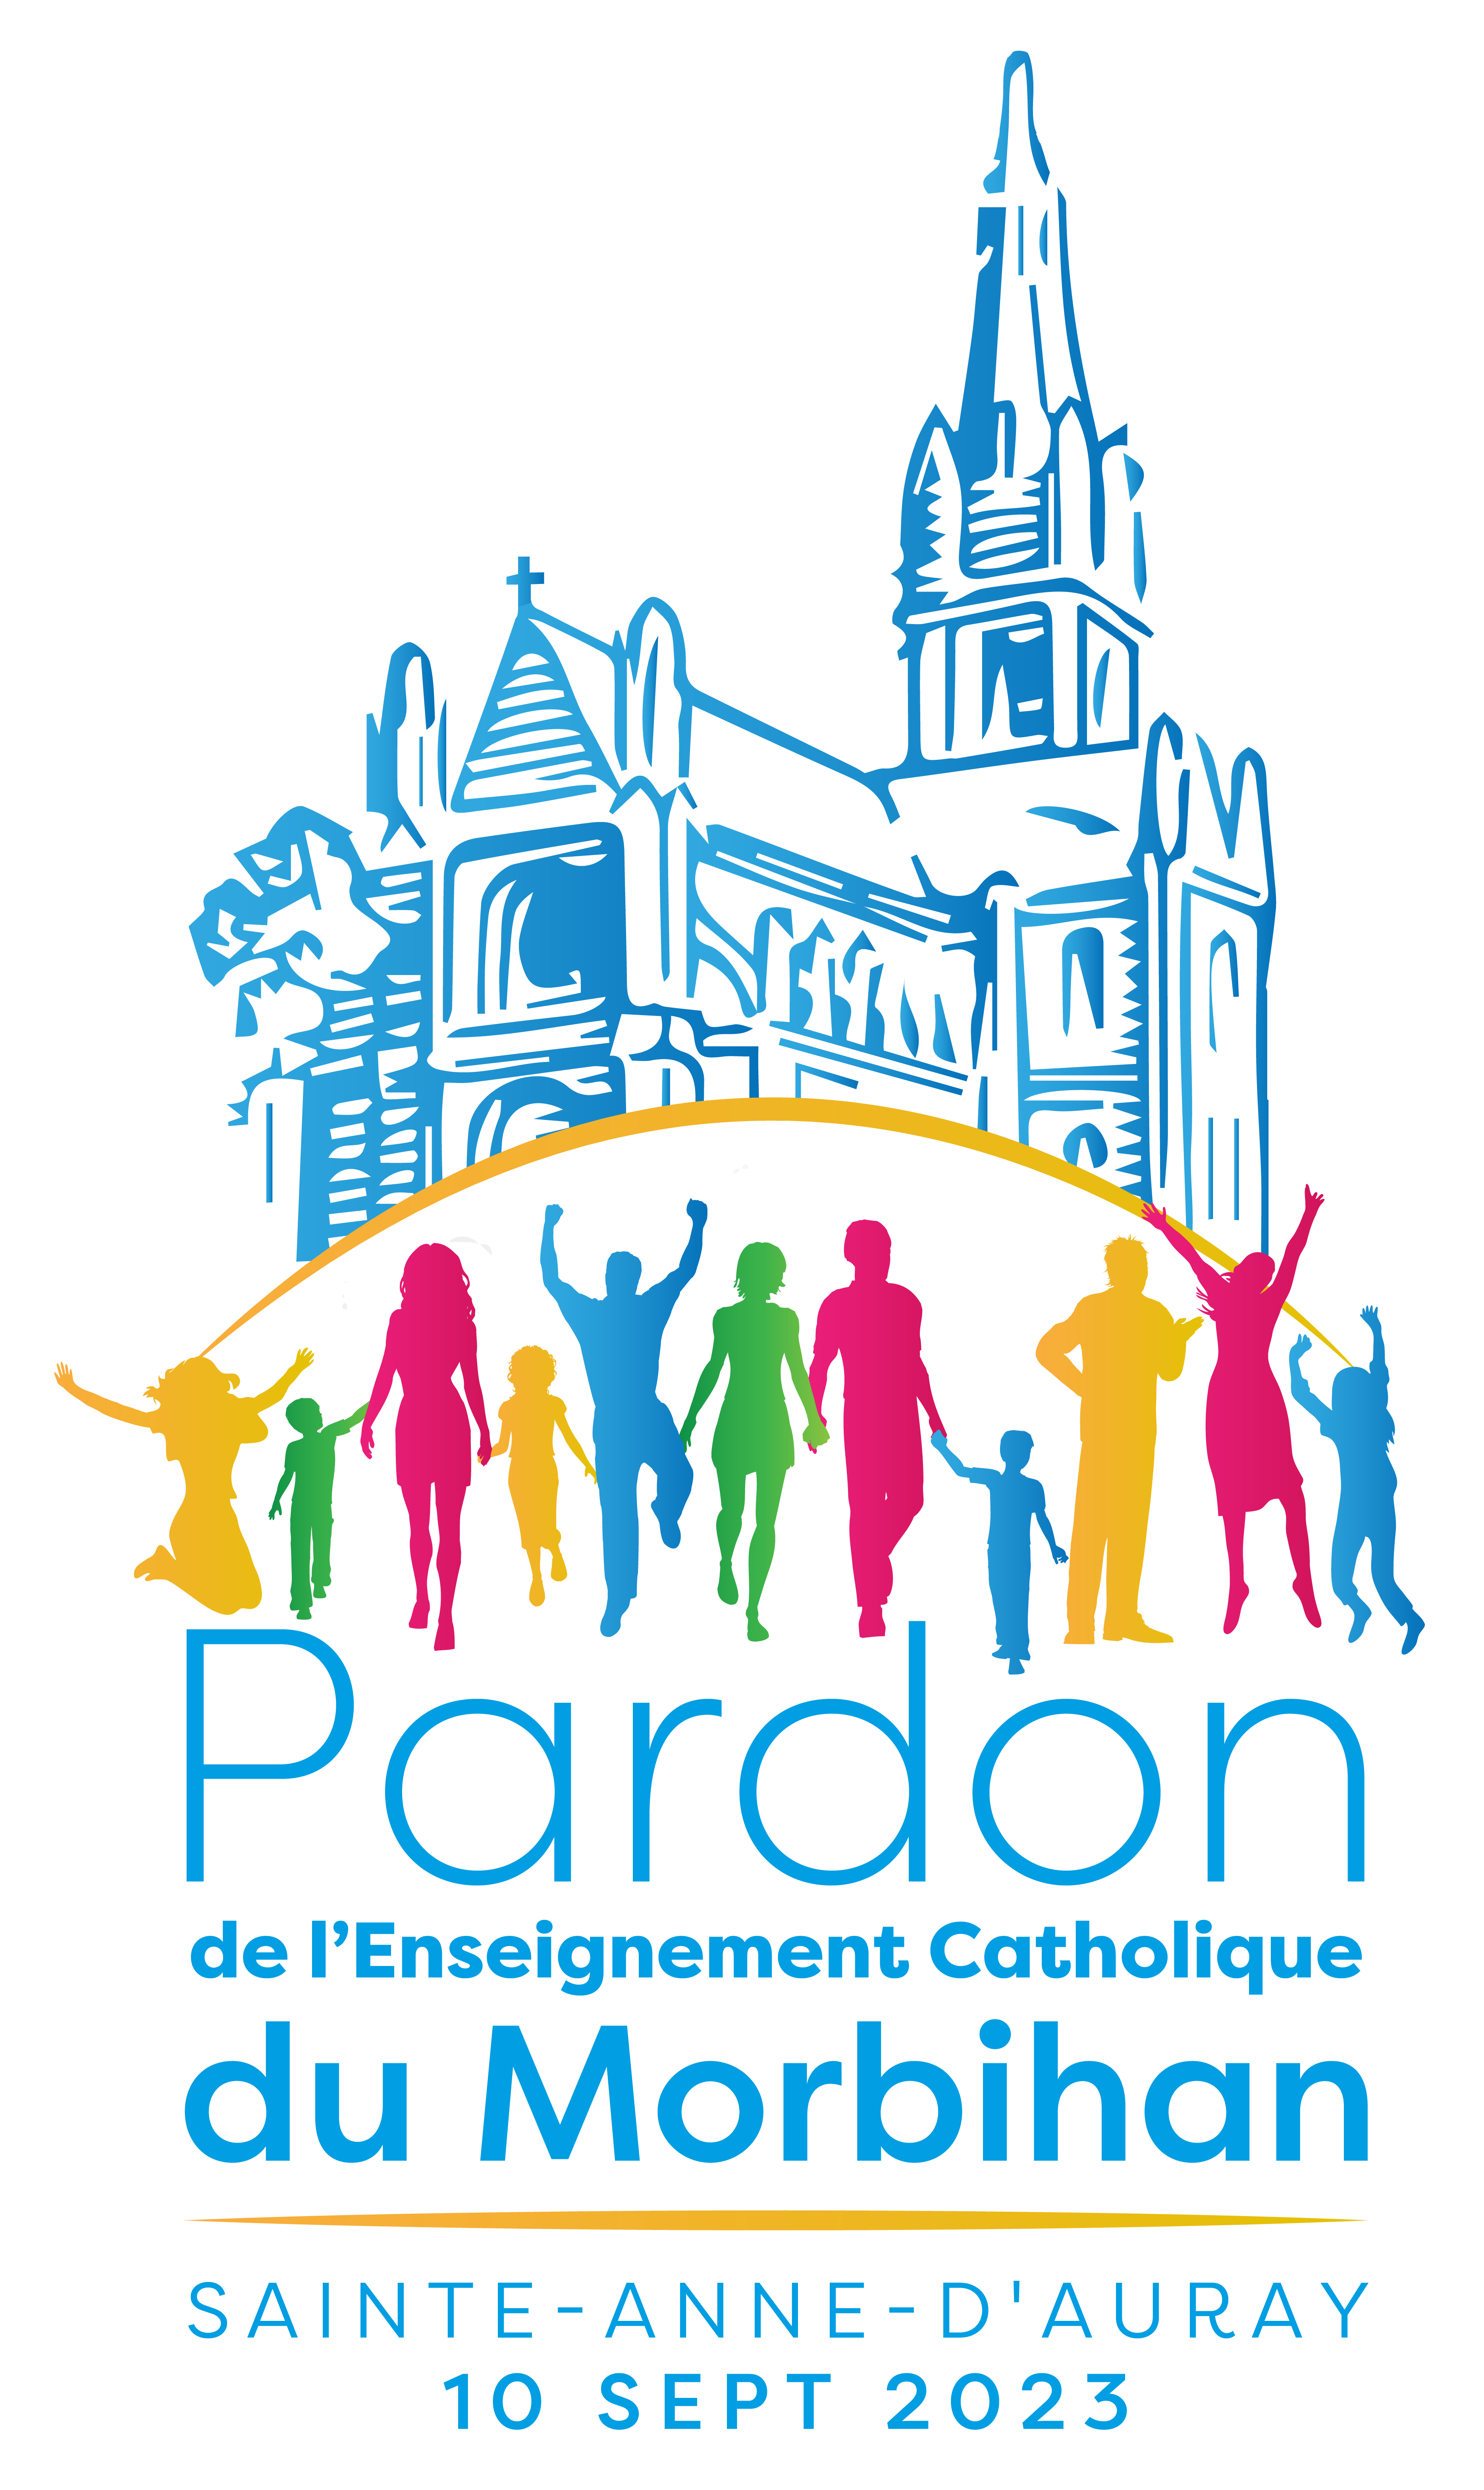 Pardon de l’Enseignement catholique du Morbihan 	Dimanche 10 septembre 2023  	Basilique de Sainte-Anne d’Auray 